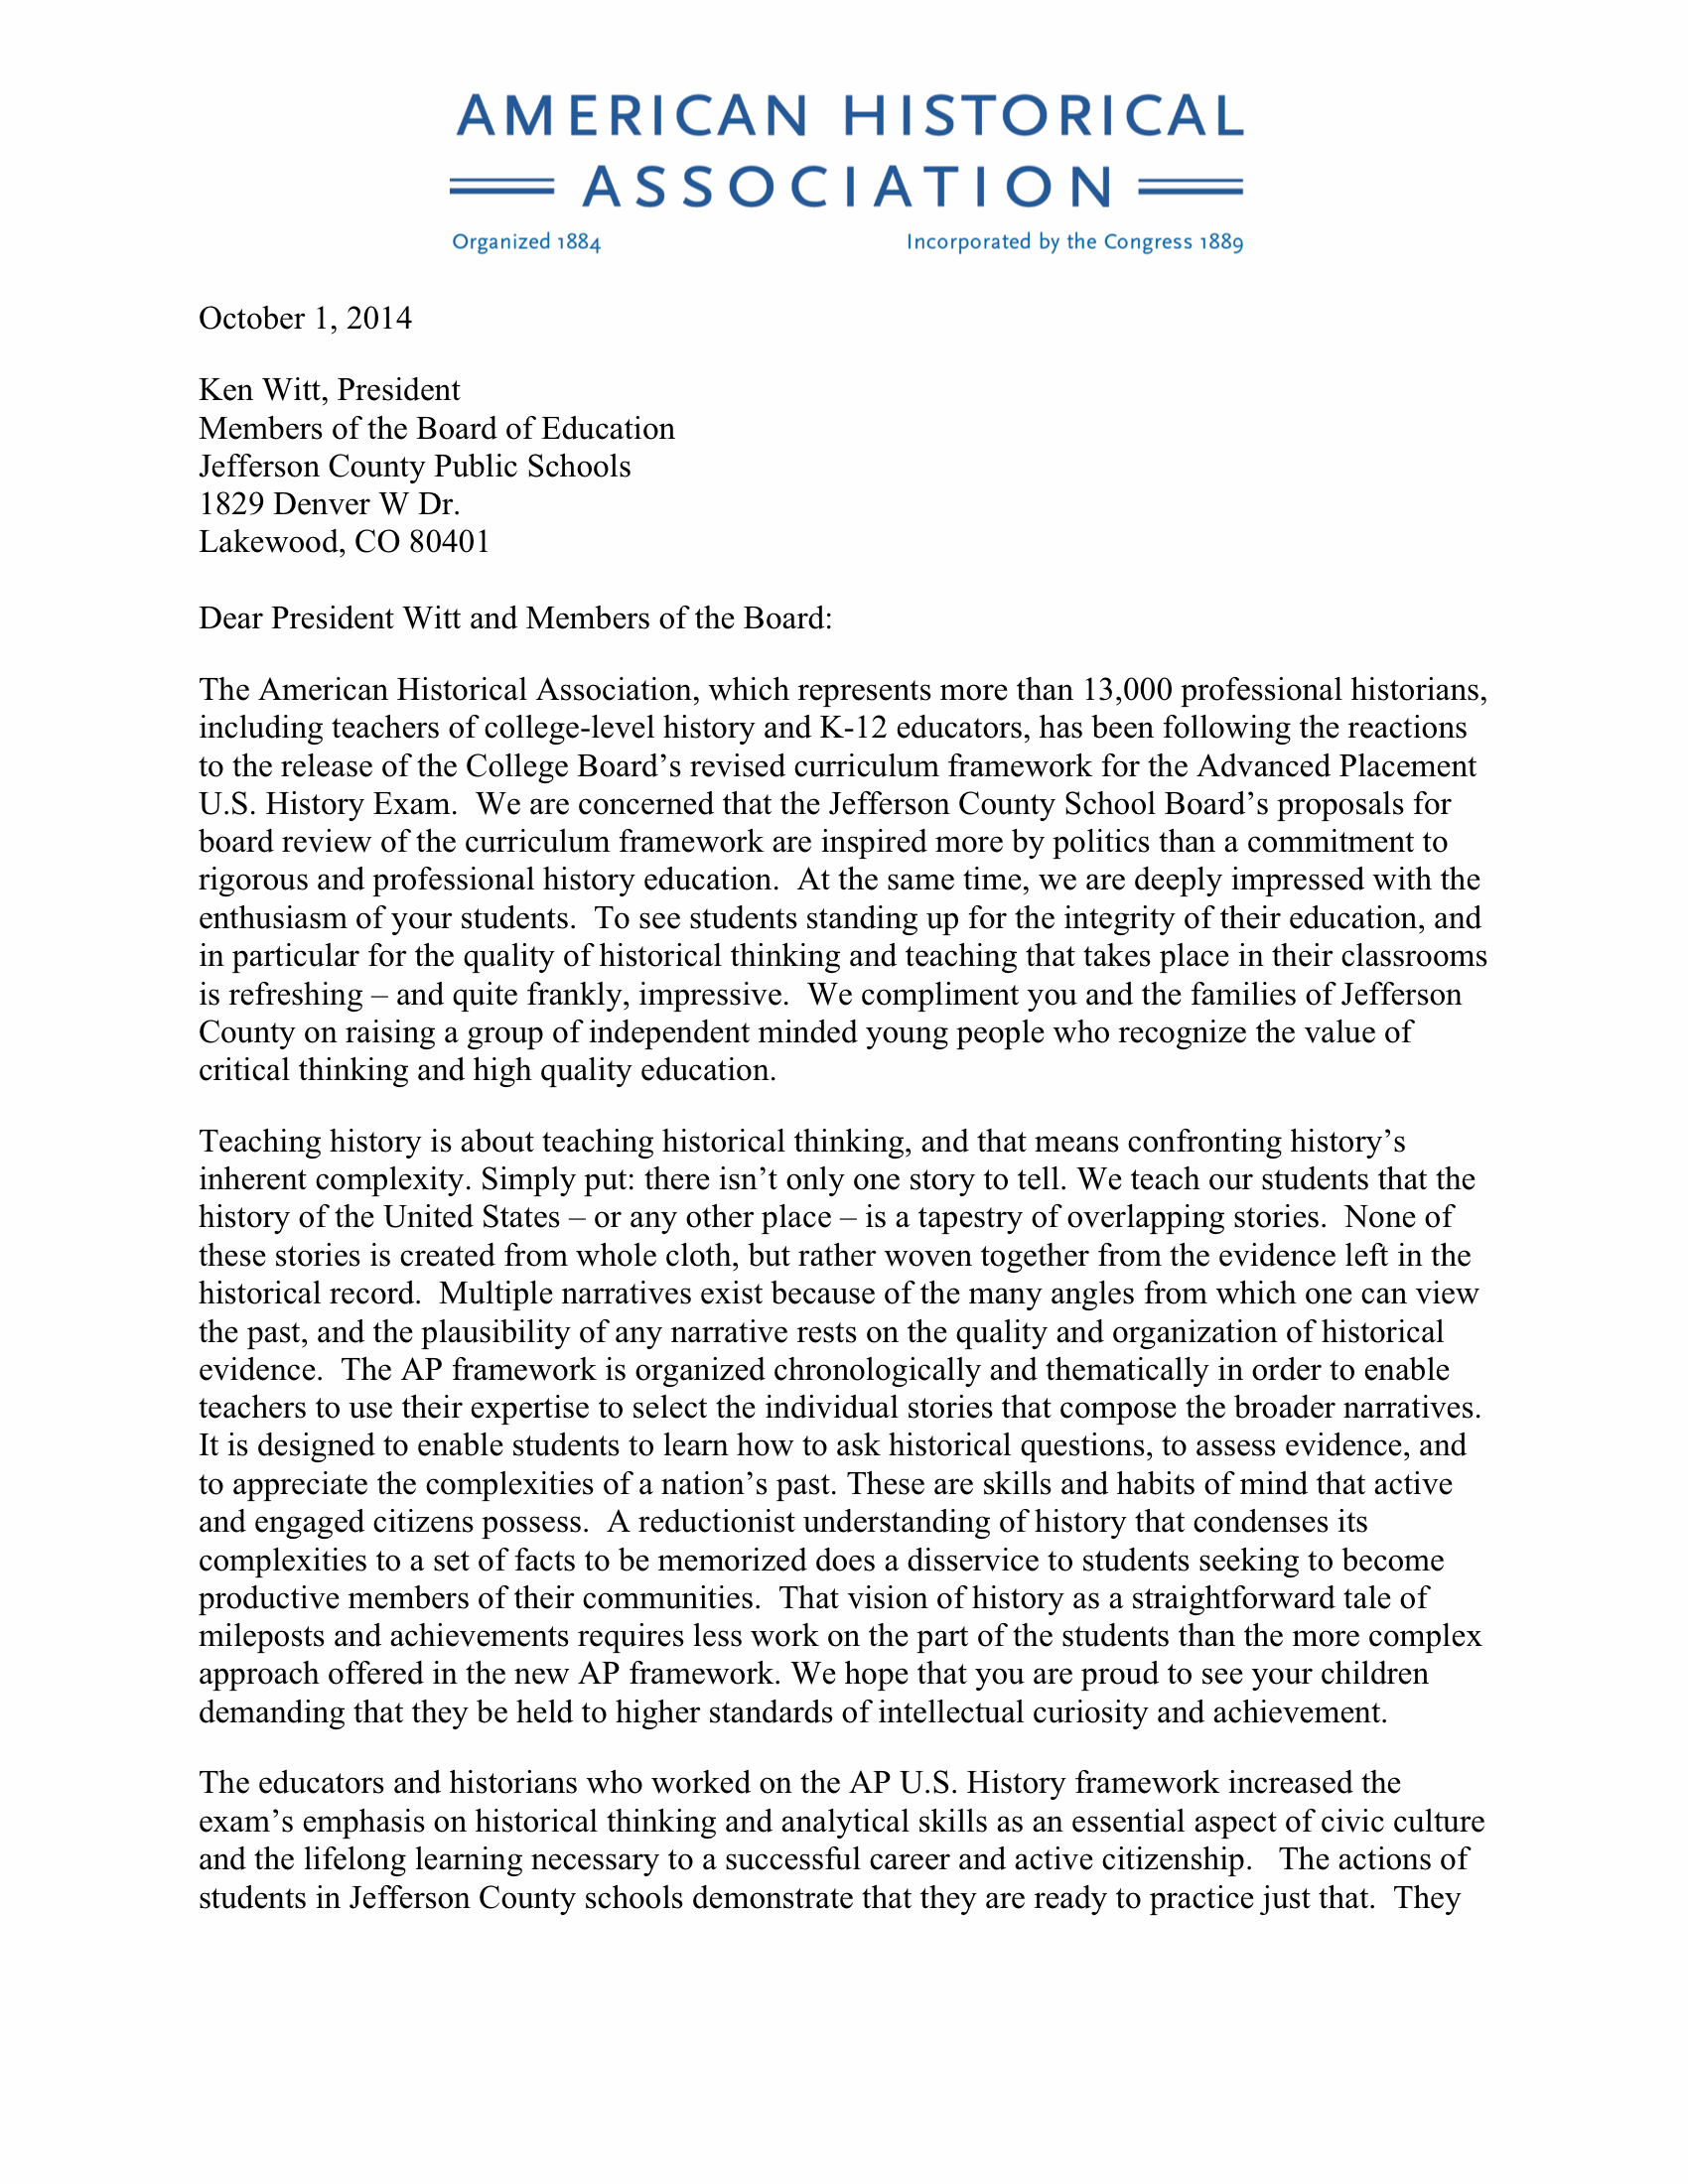 JeffCo School Board letter 5